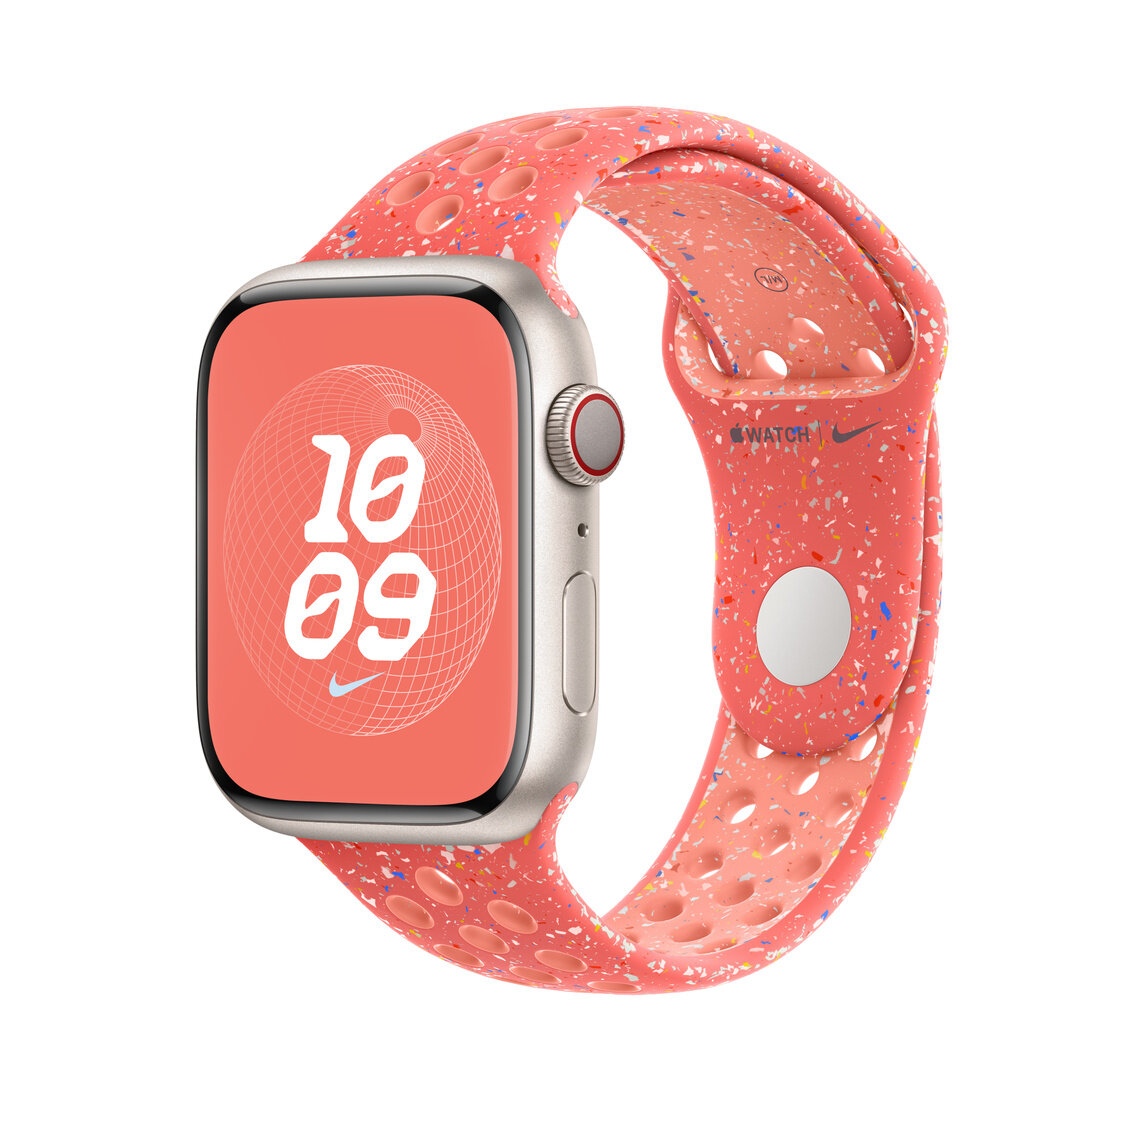 Pasek sportowy Nike Apple MUVF3ZM/A grafika przedstawia smartwatch z założonym paskiem pod skosem